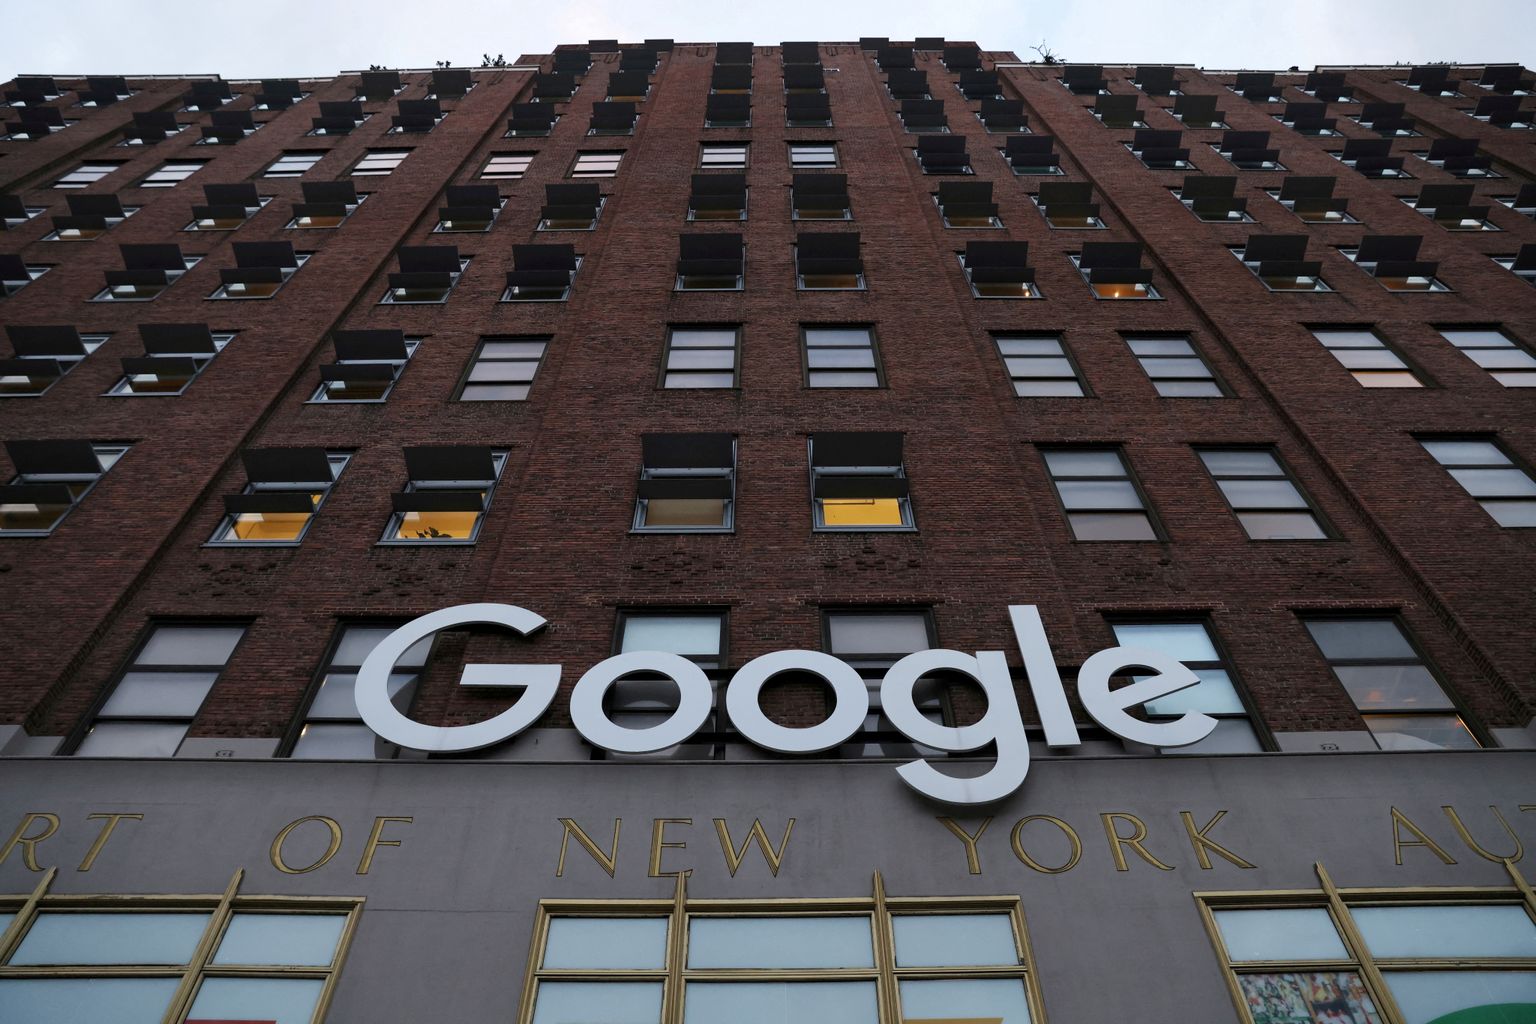 Google'i kontor New Yorgis.